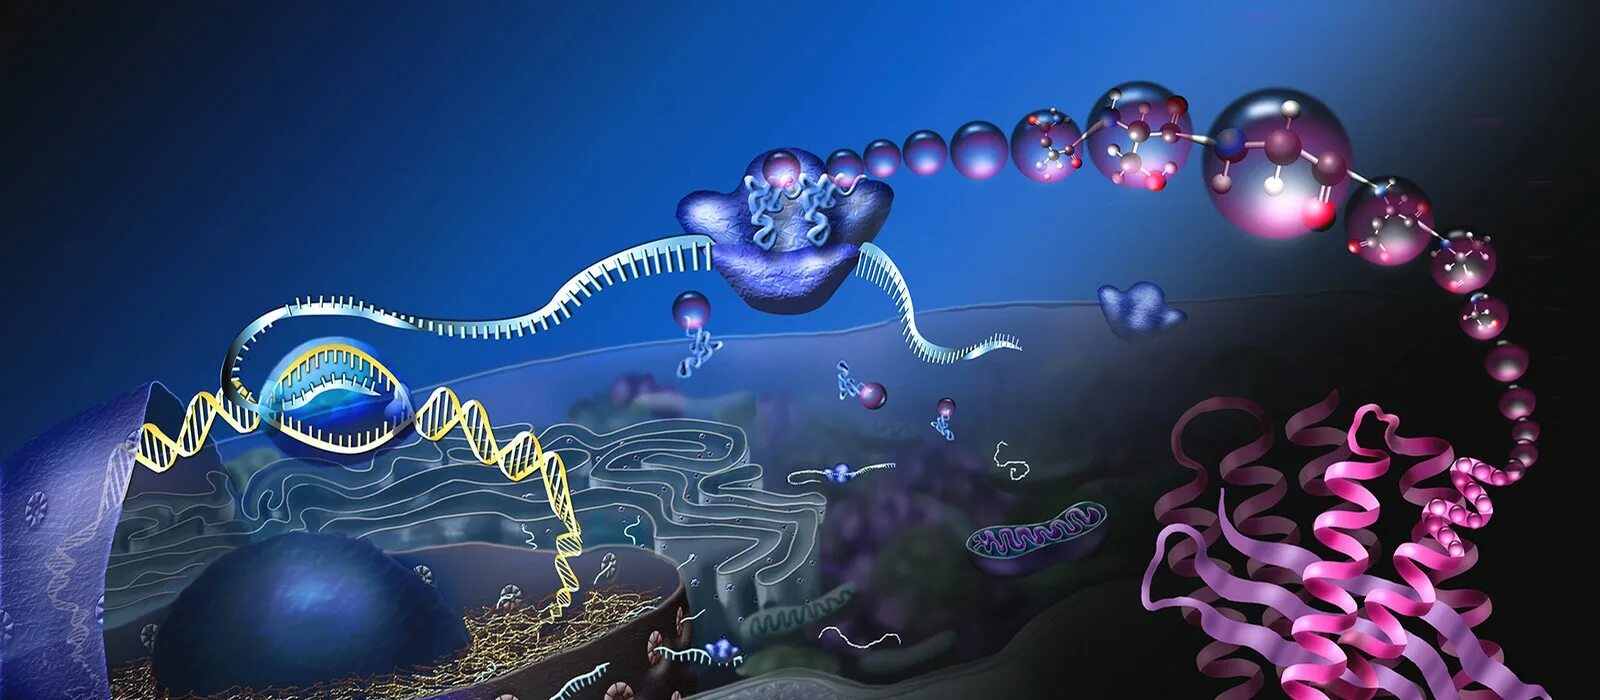 Живая клетка днк. Клетка ДНК. Искусственная форма жизни. Молекулярные и клеточные технологии. Синтетическая форма жизни.